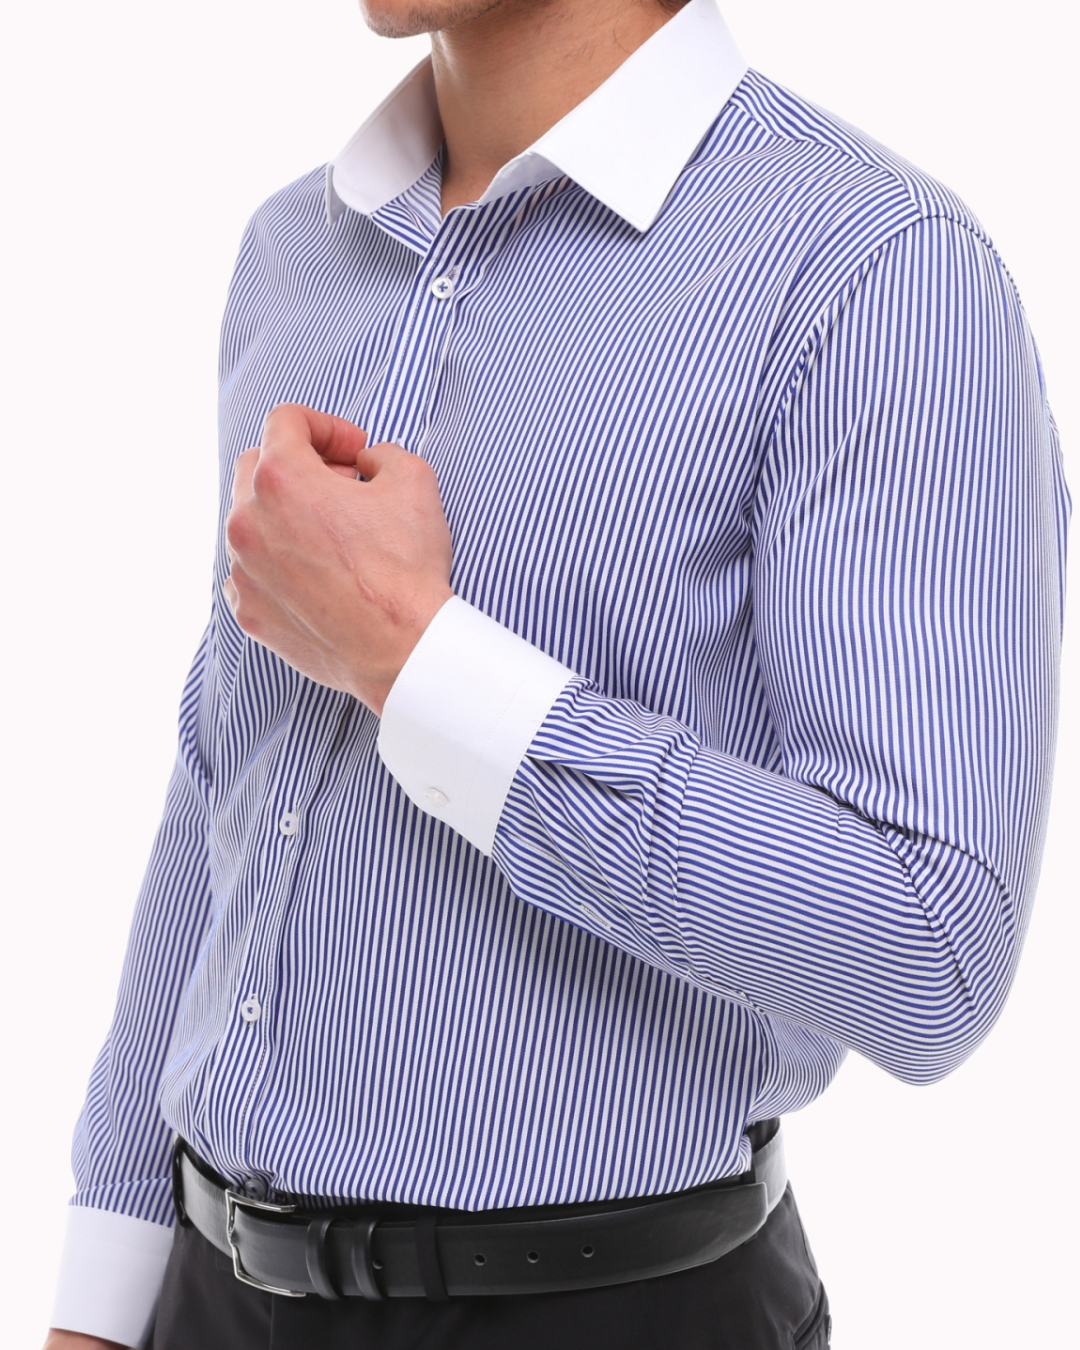 Blau-weiß gestreiftes Hemd mit weißem Kragen - einfaches Bügeln gestre –  ecanyon